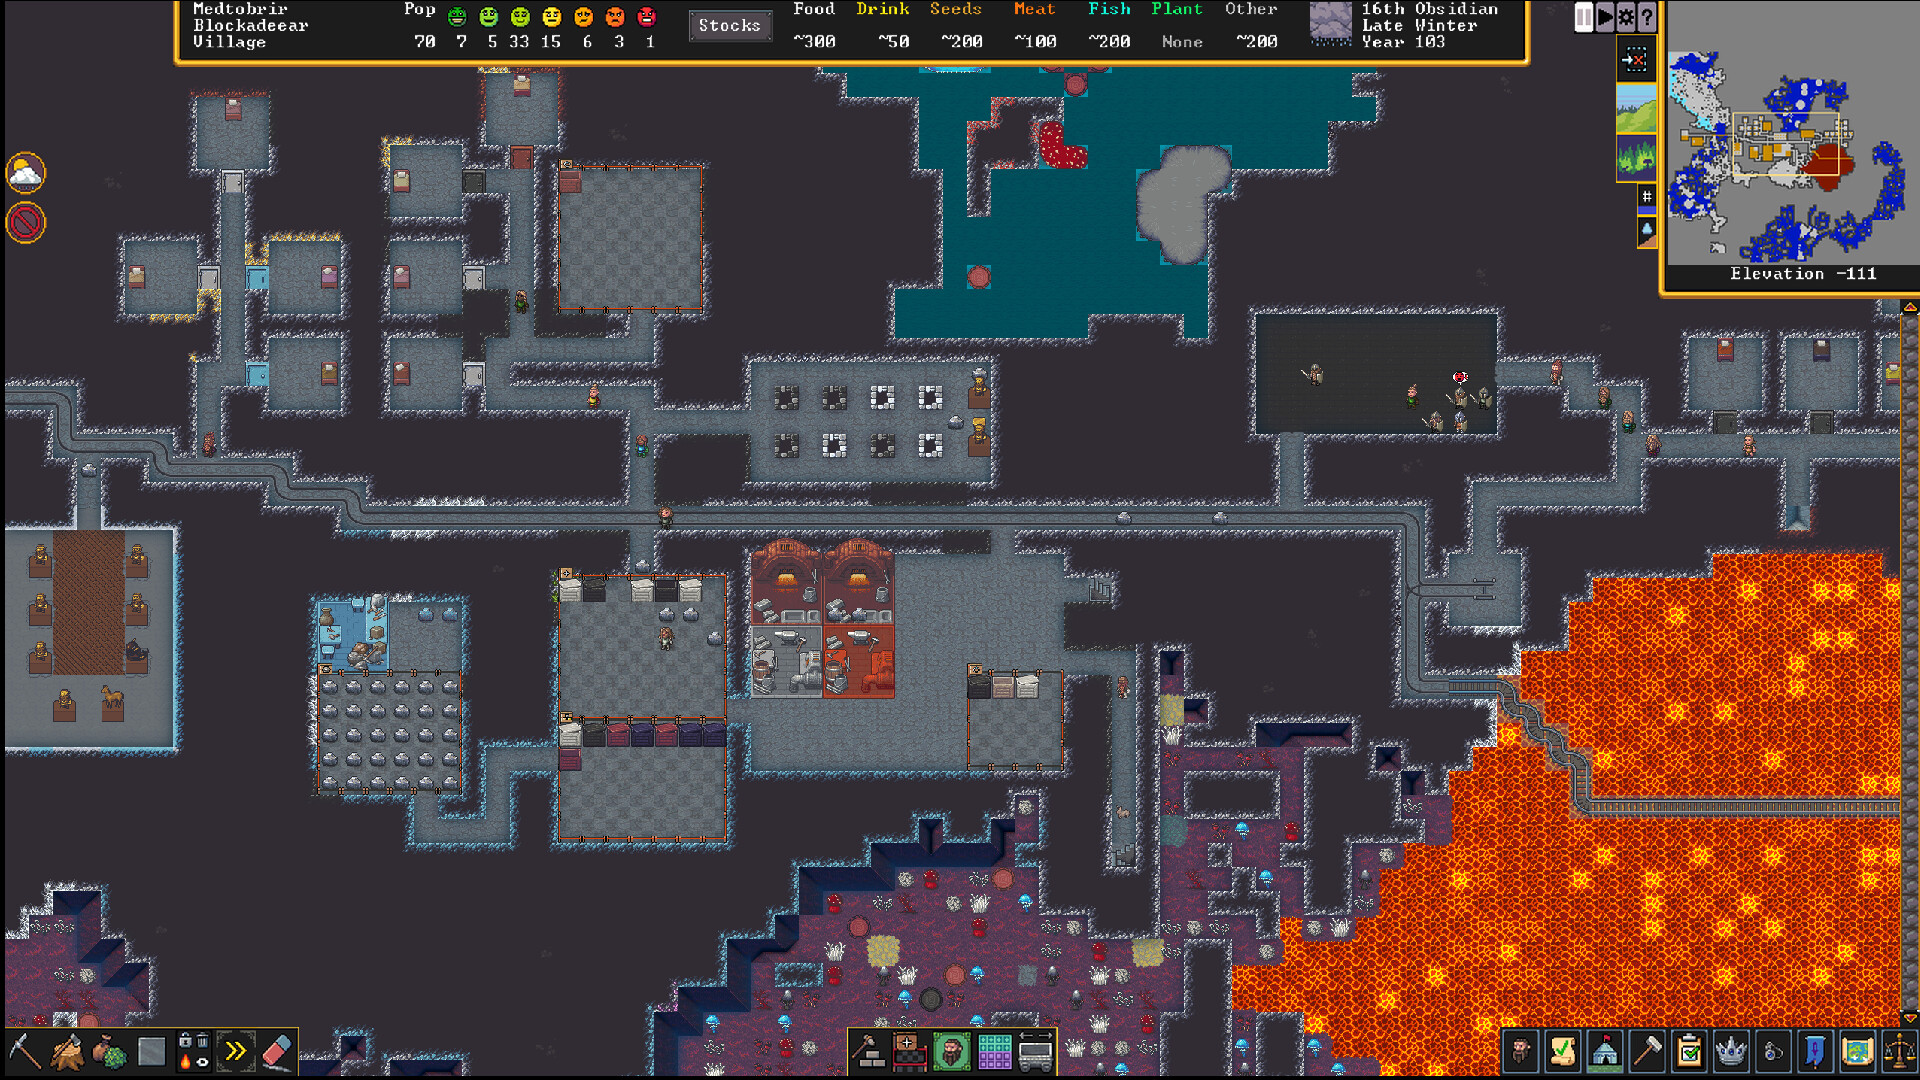 dwarf-fortress-pc-screenshot-2